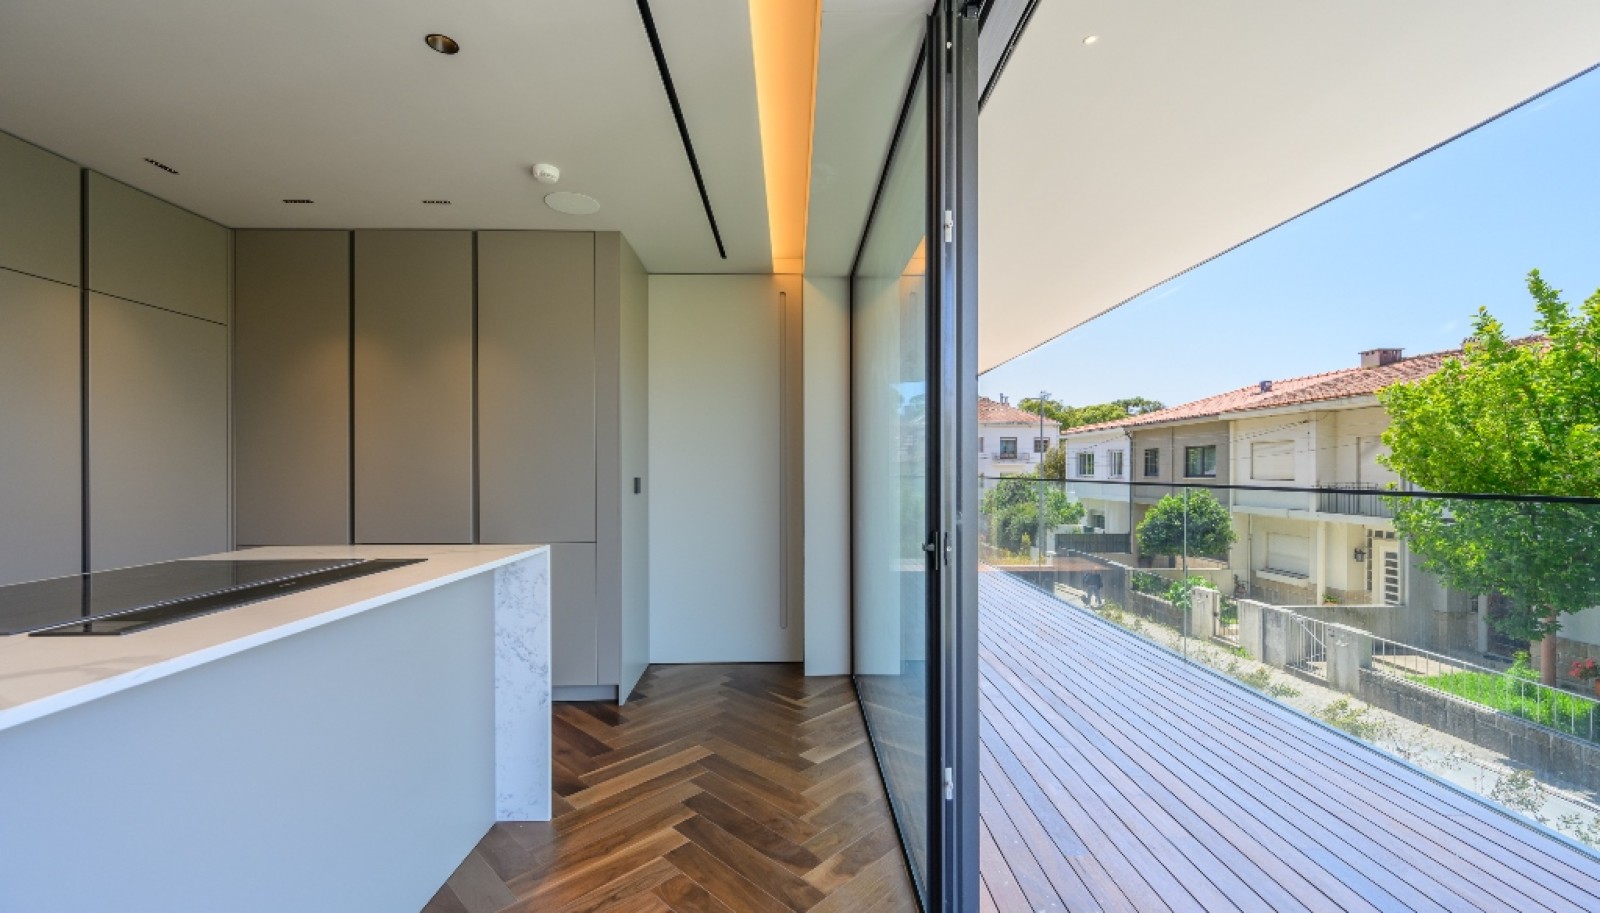 Venda: Apartamento novo com terraço, na Boavista, Porto_267529